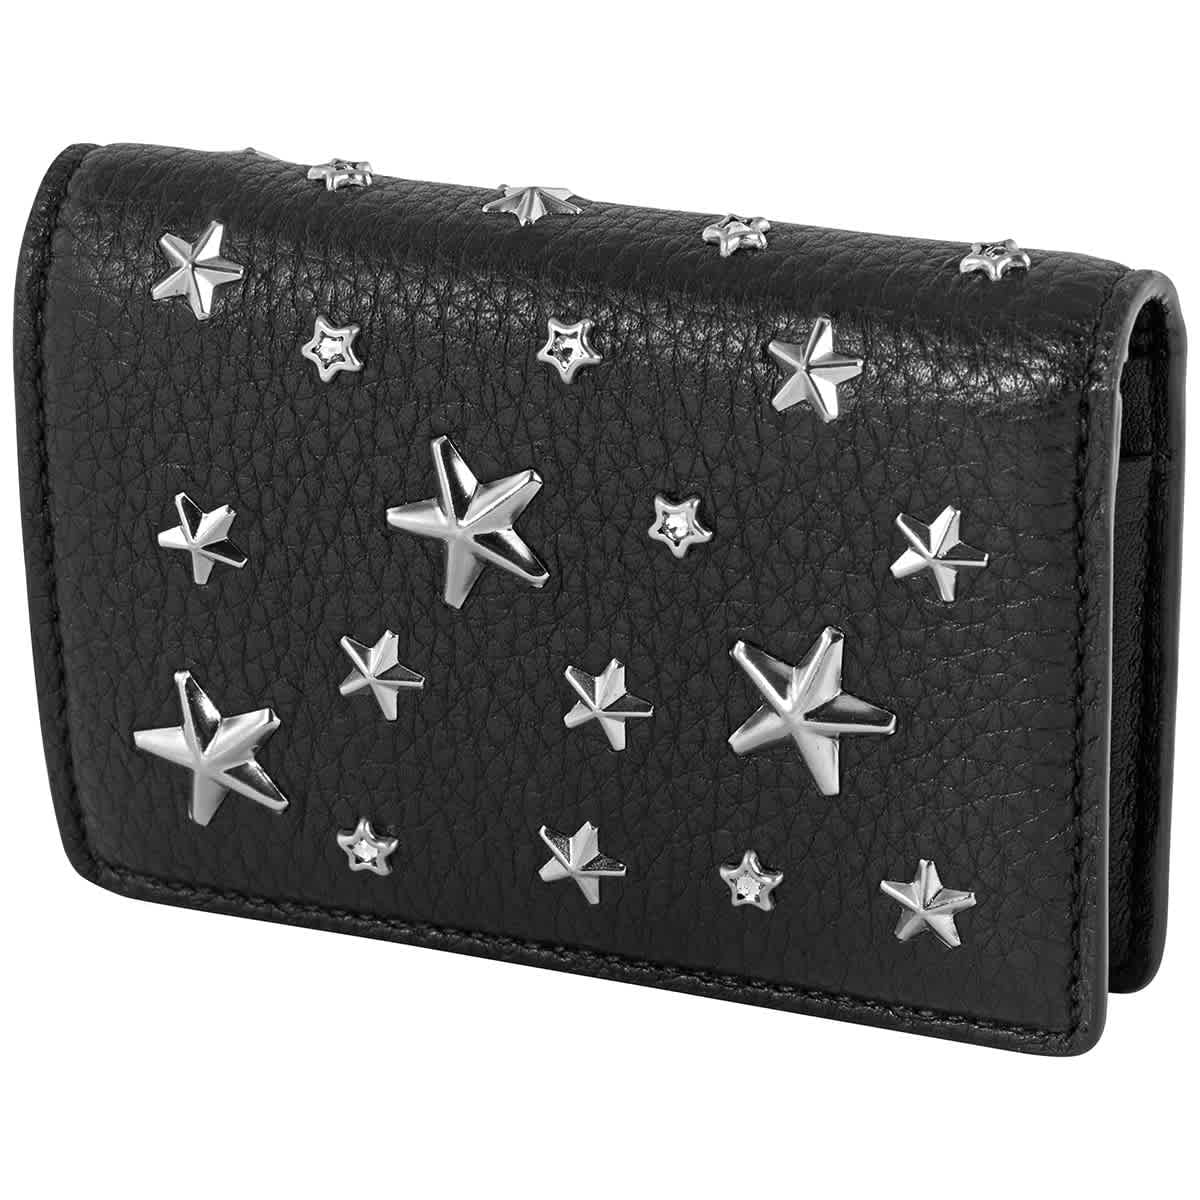 Jimmy Choo - Jimmy Choo Ladies Jaxi Leather Bi-Fold Wallet with Stars ...